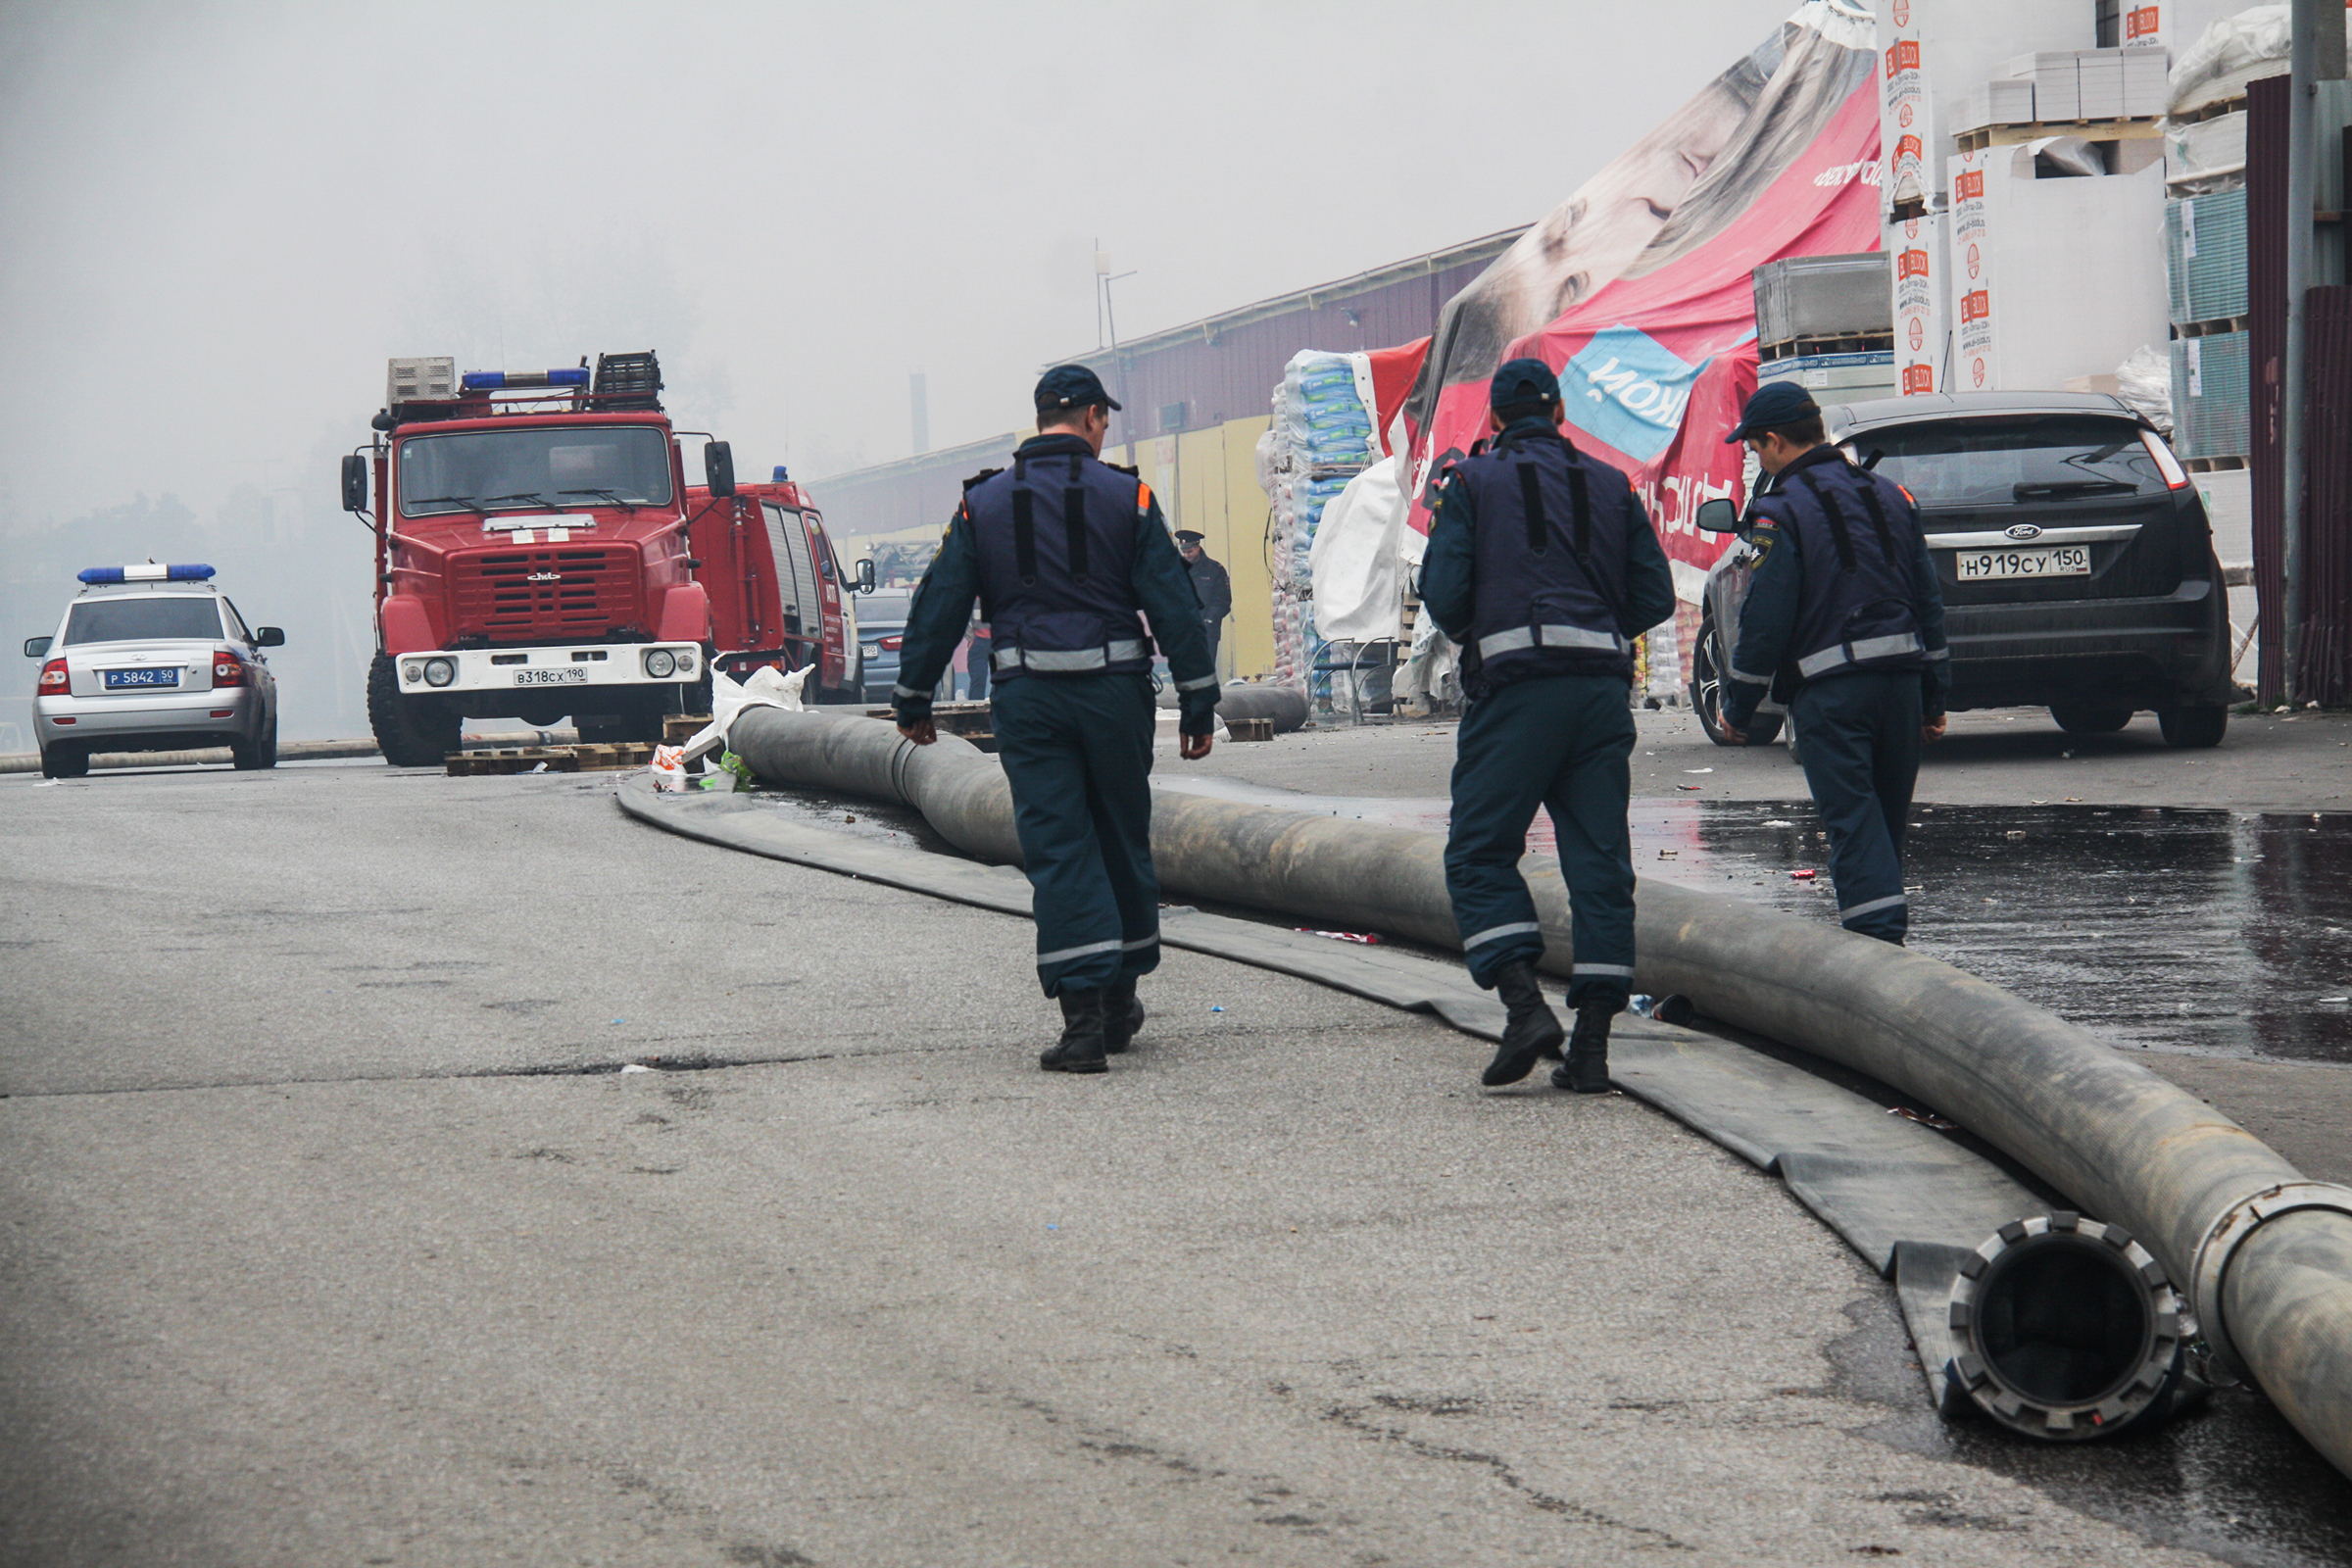 Тушением в течение нескольких часов занимались 25 пожарных расчетов и три вертолета, которые сбросили на здание рынка более 440 тыс. л воды
